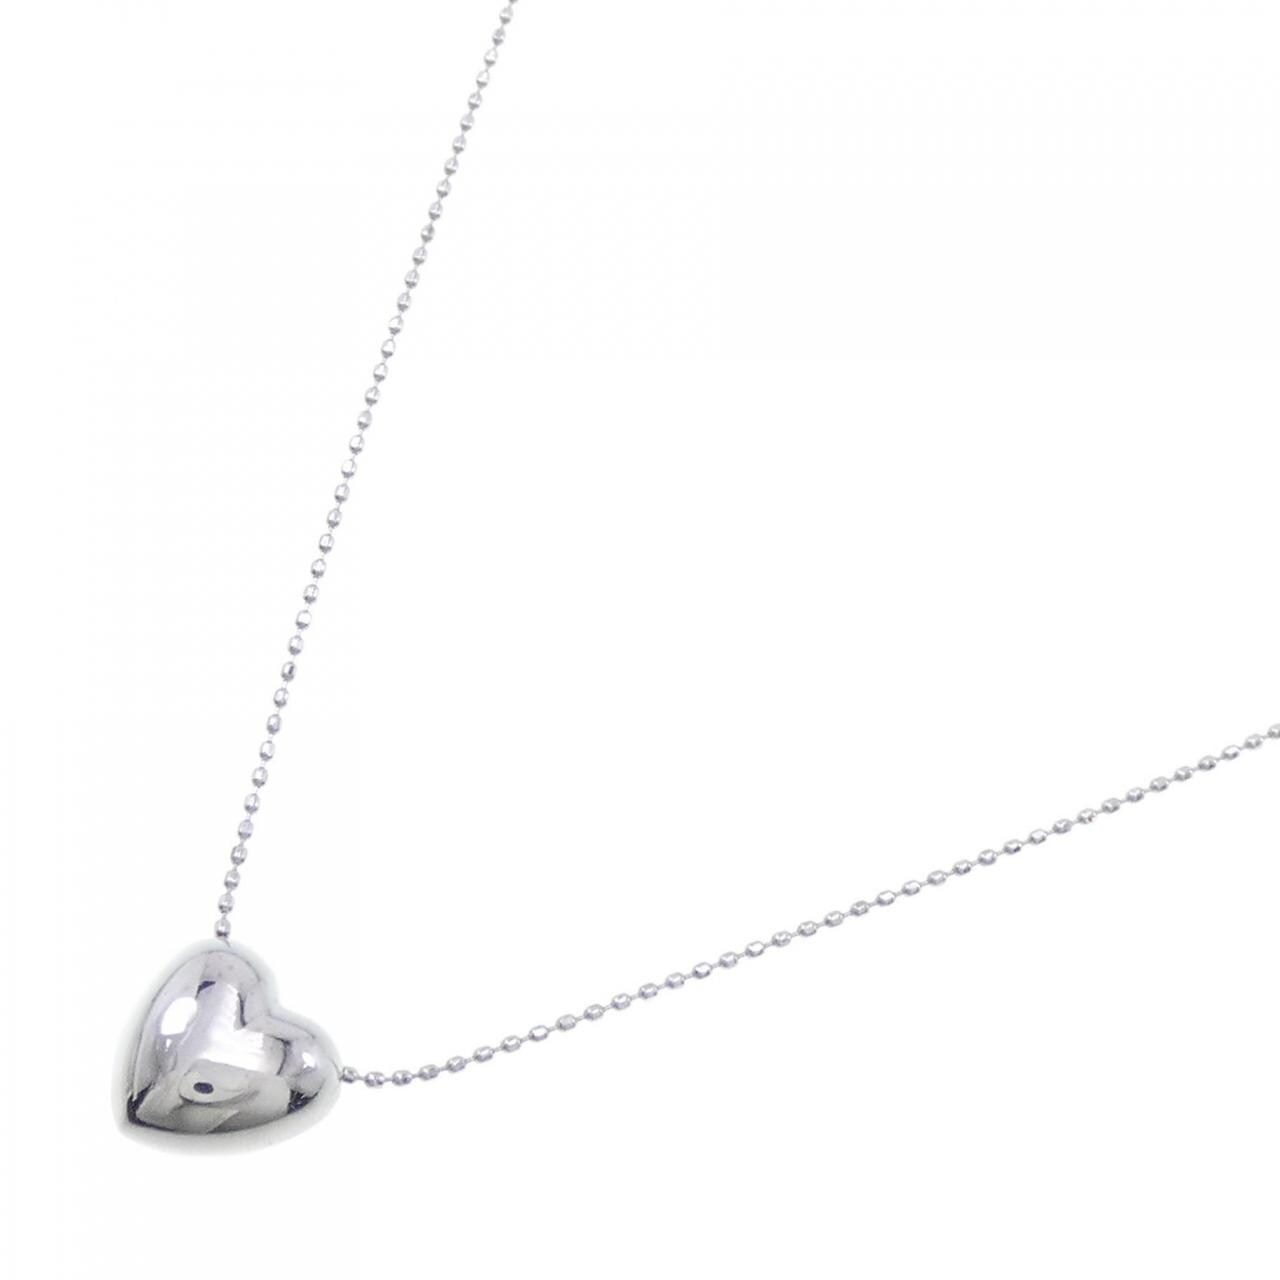 K18WG heart necklace